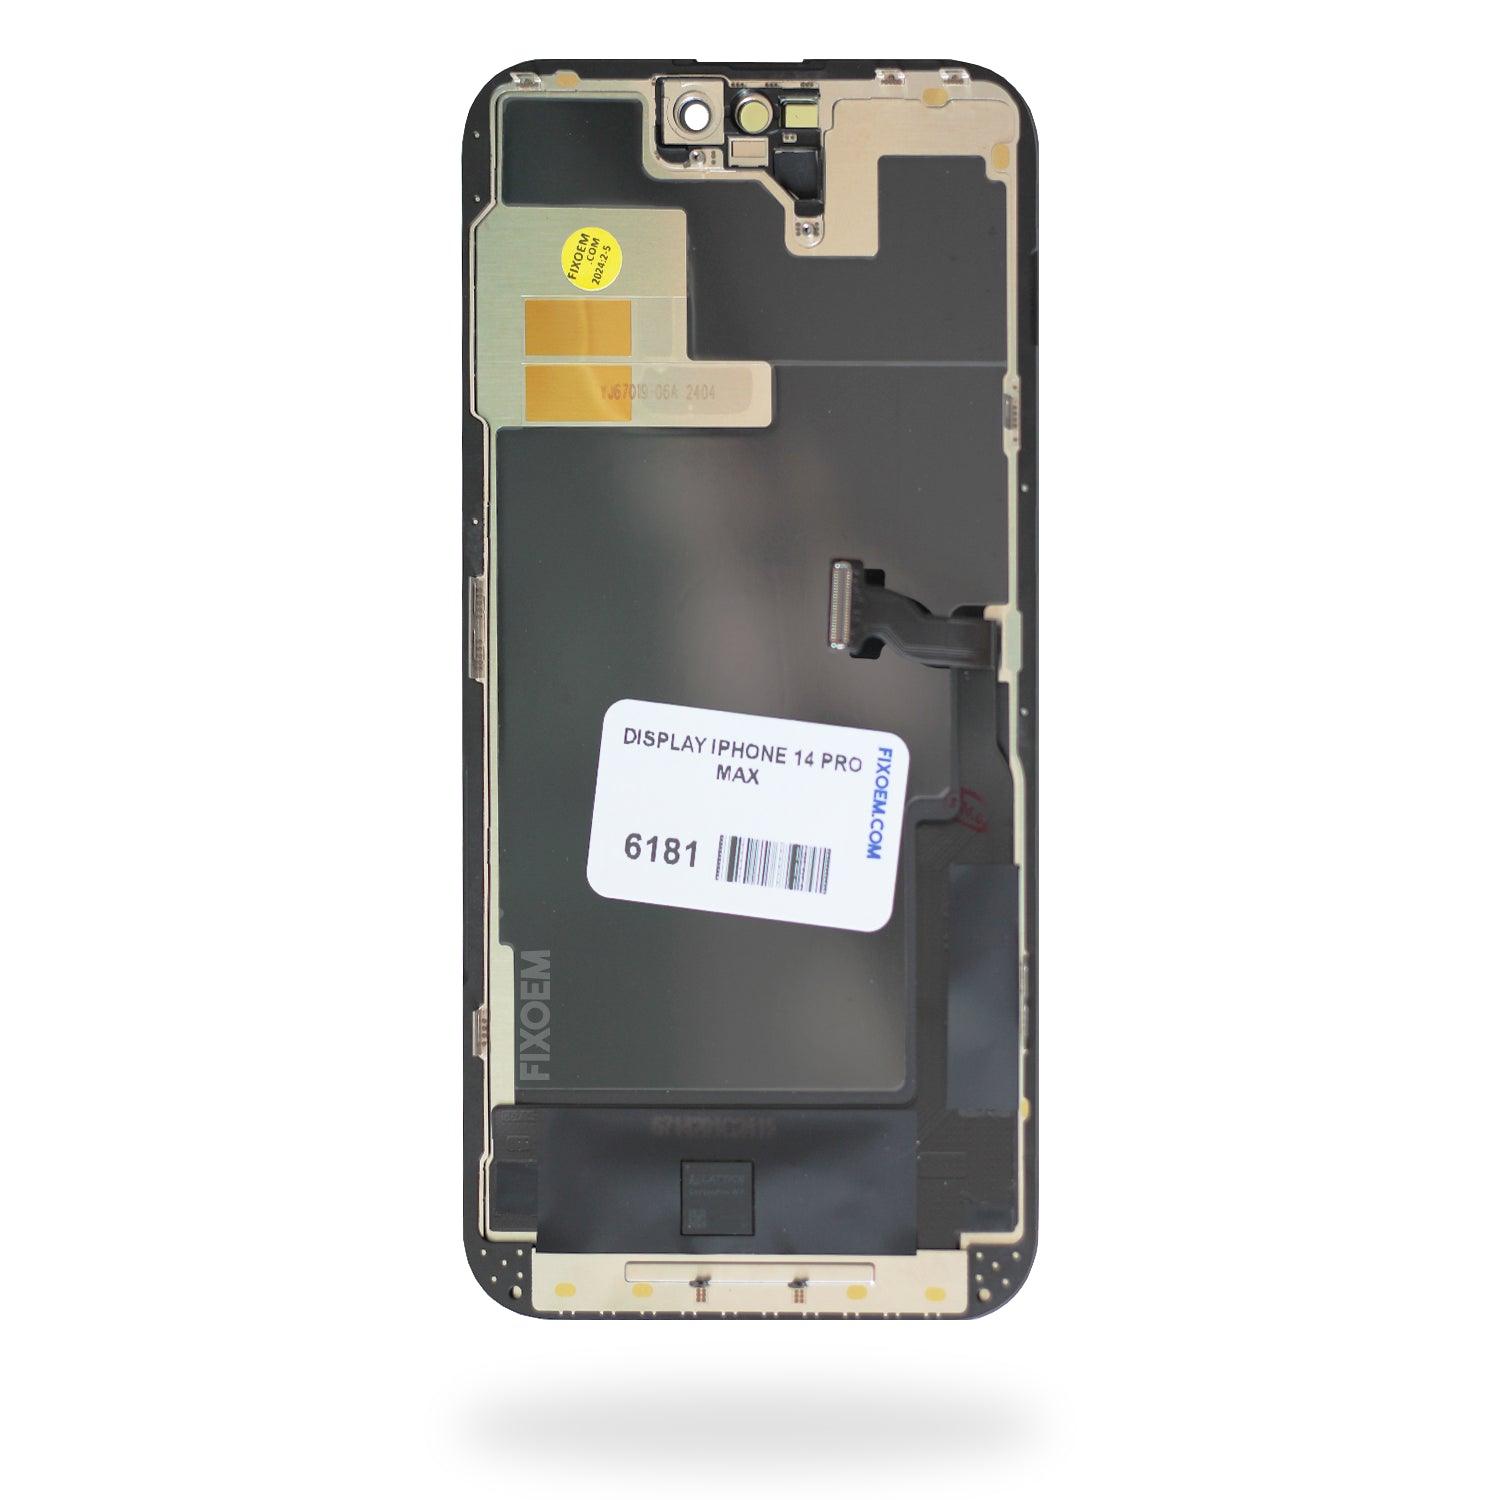 Display Iphone 14 Pro Max a solo $ 3370.00 Refaccion y puestos celulares, refurbish y microelectronica.- FixOEM